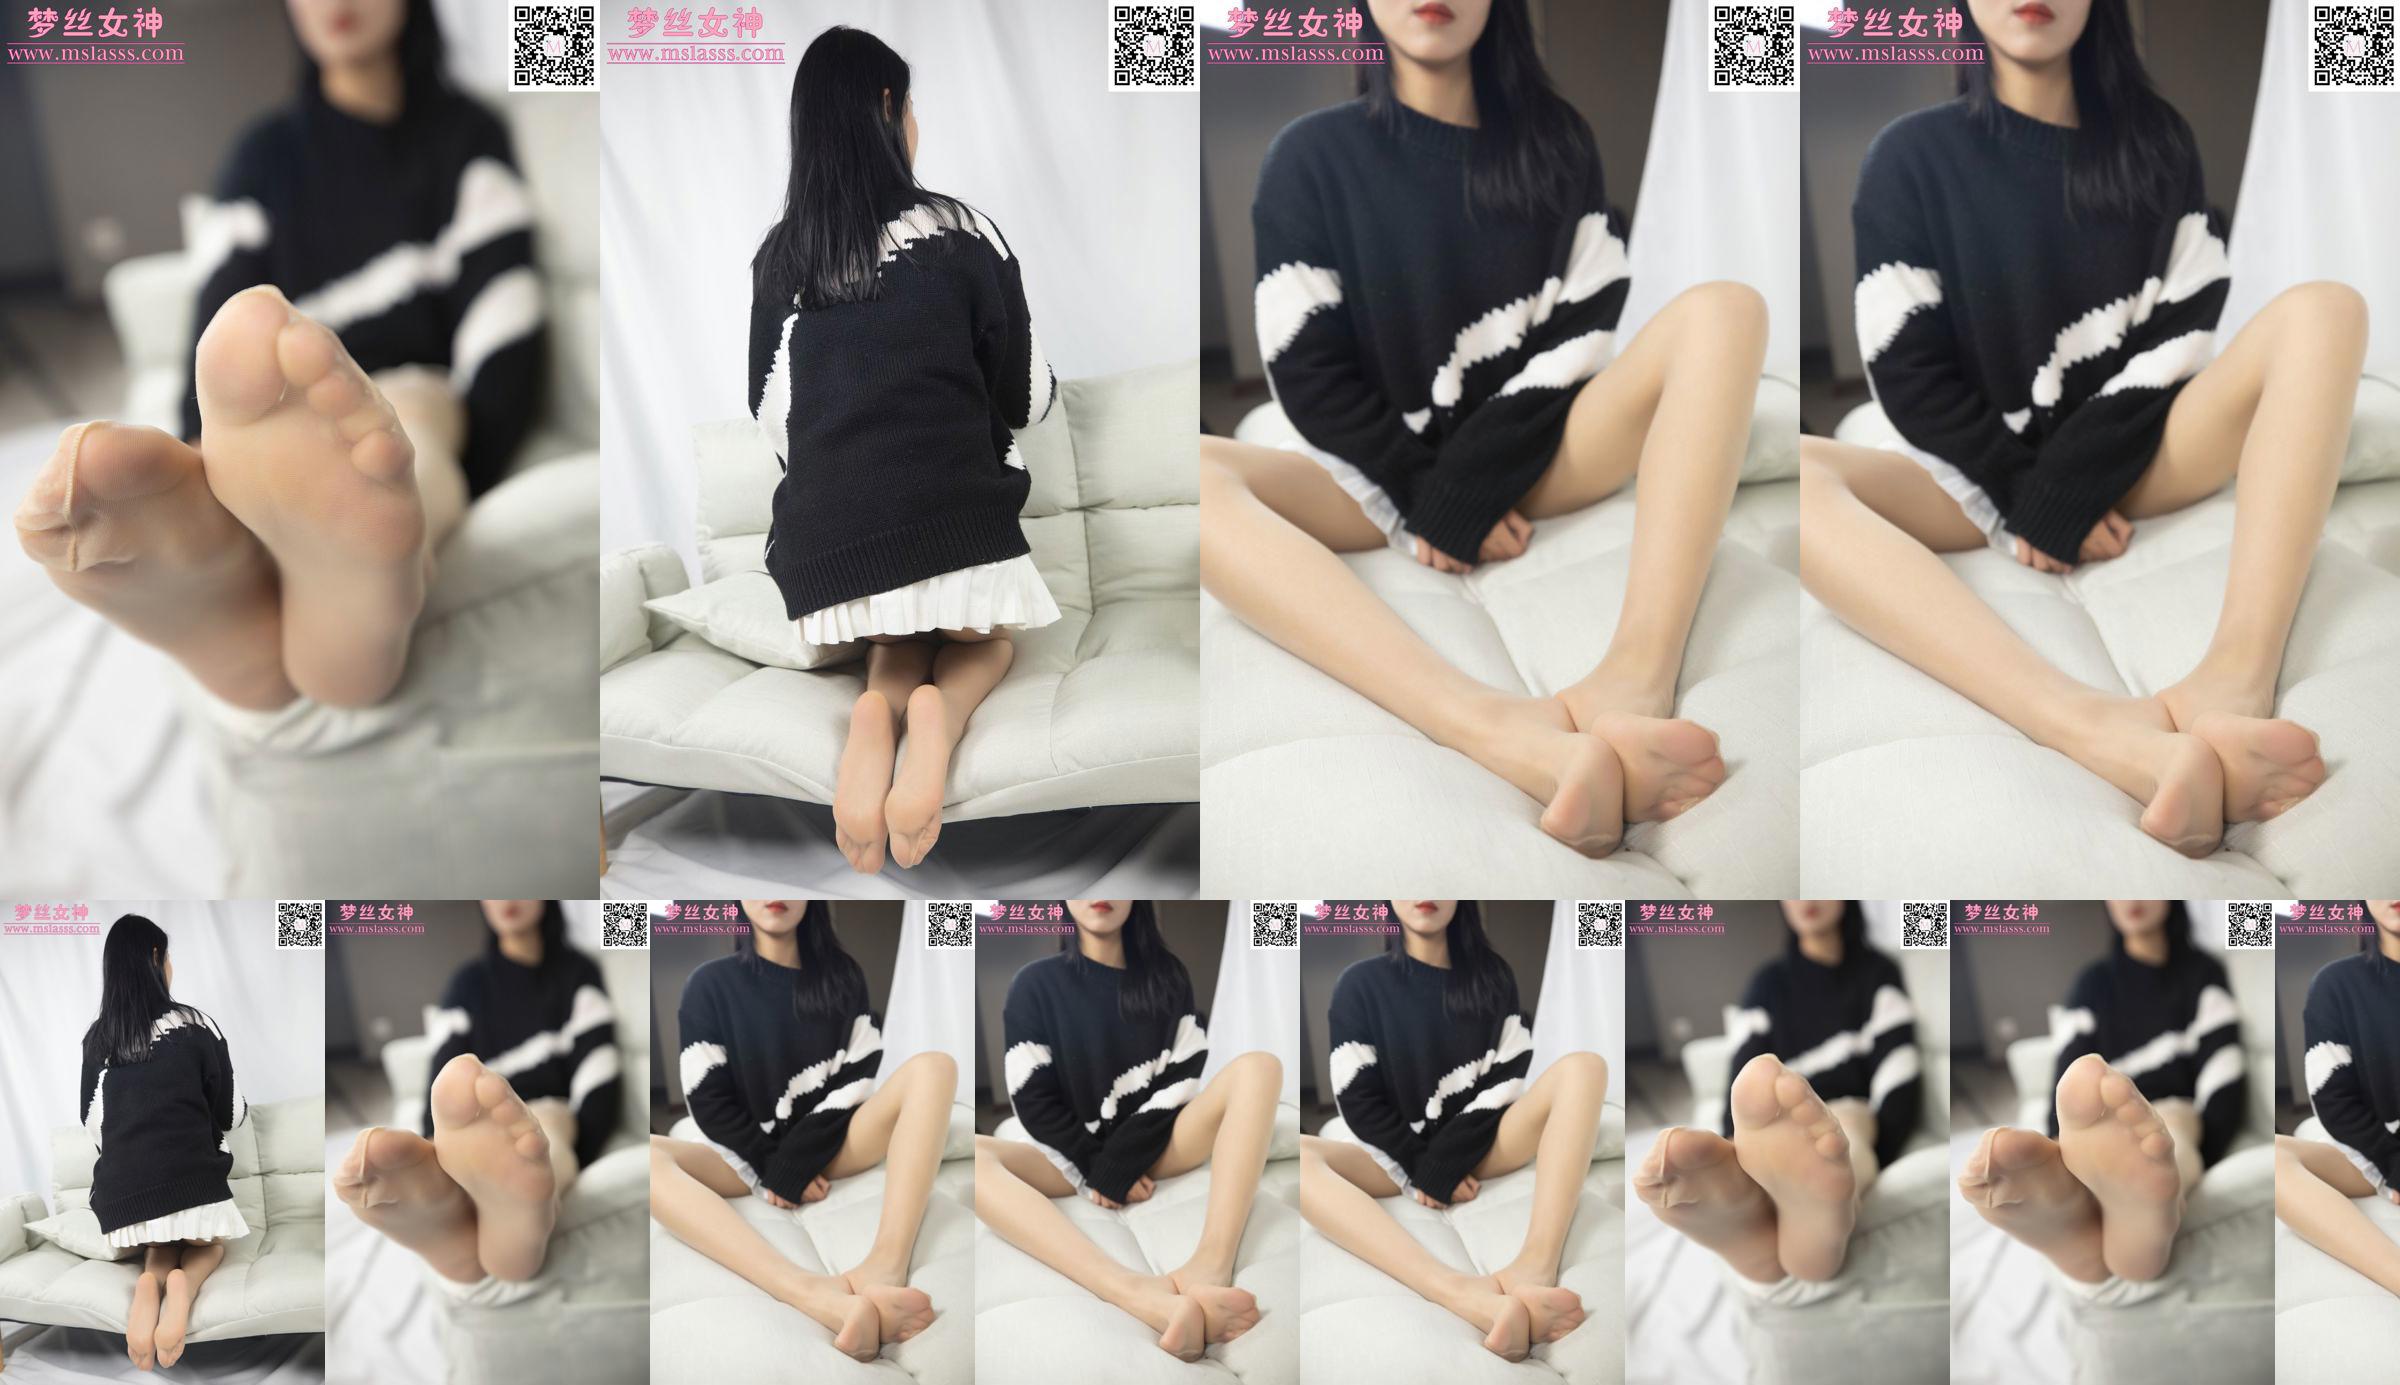 [꿈의 여신 MSLASS] Xiaomu의 스웨터는 그녀의 긴 다리를 막을 수 없습니다 No.8ed537 페이지 34